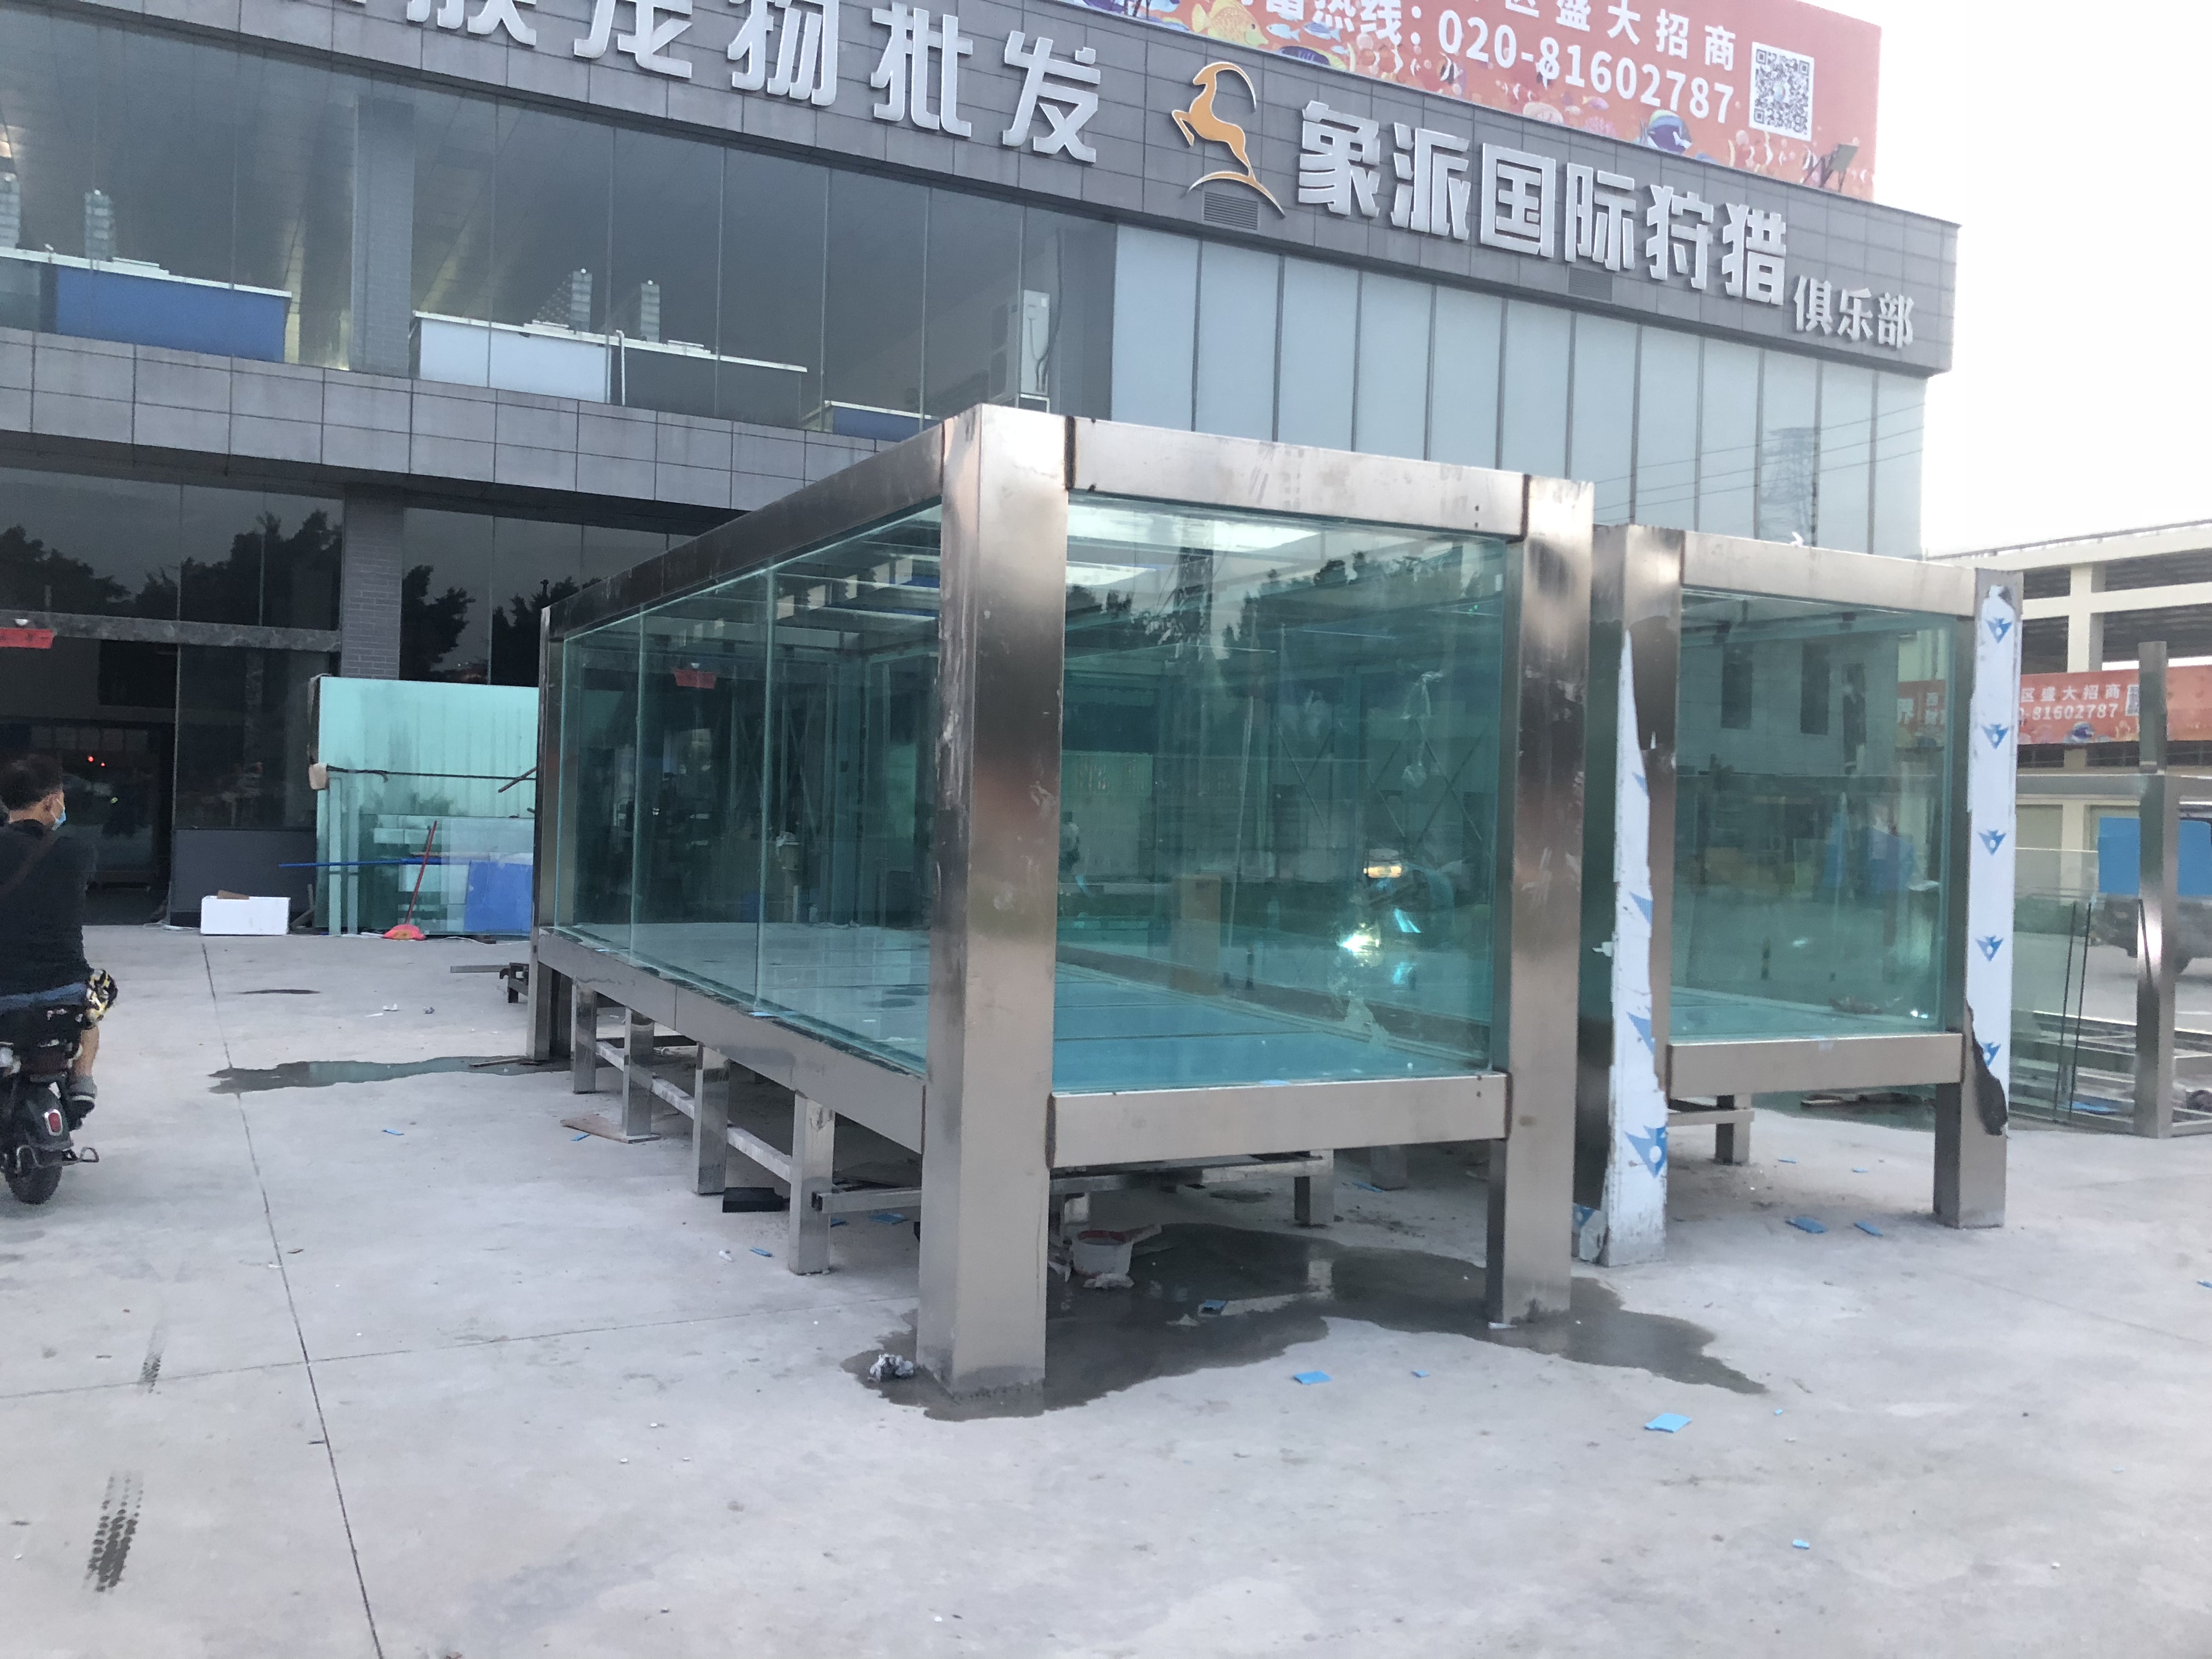 广东大型亚克力生态鱼缸定做   广州海鲜池设备制冷工程有限公司